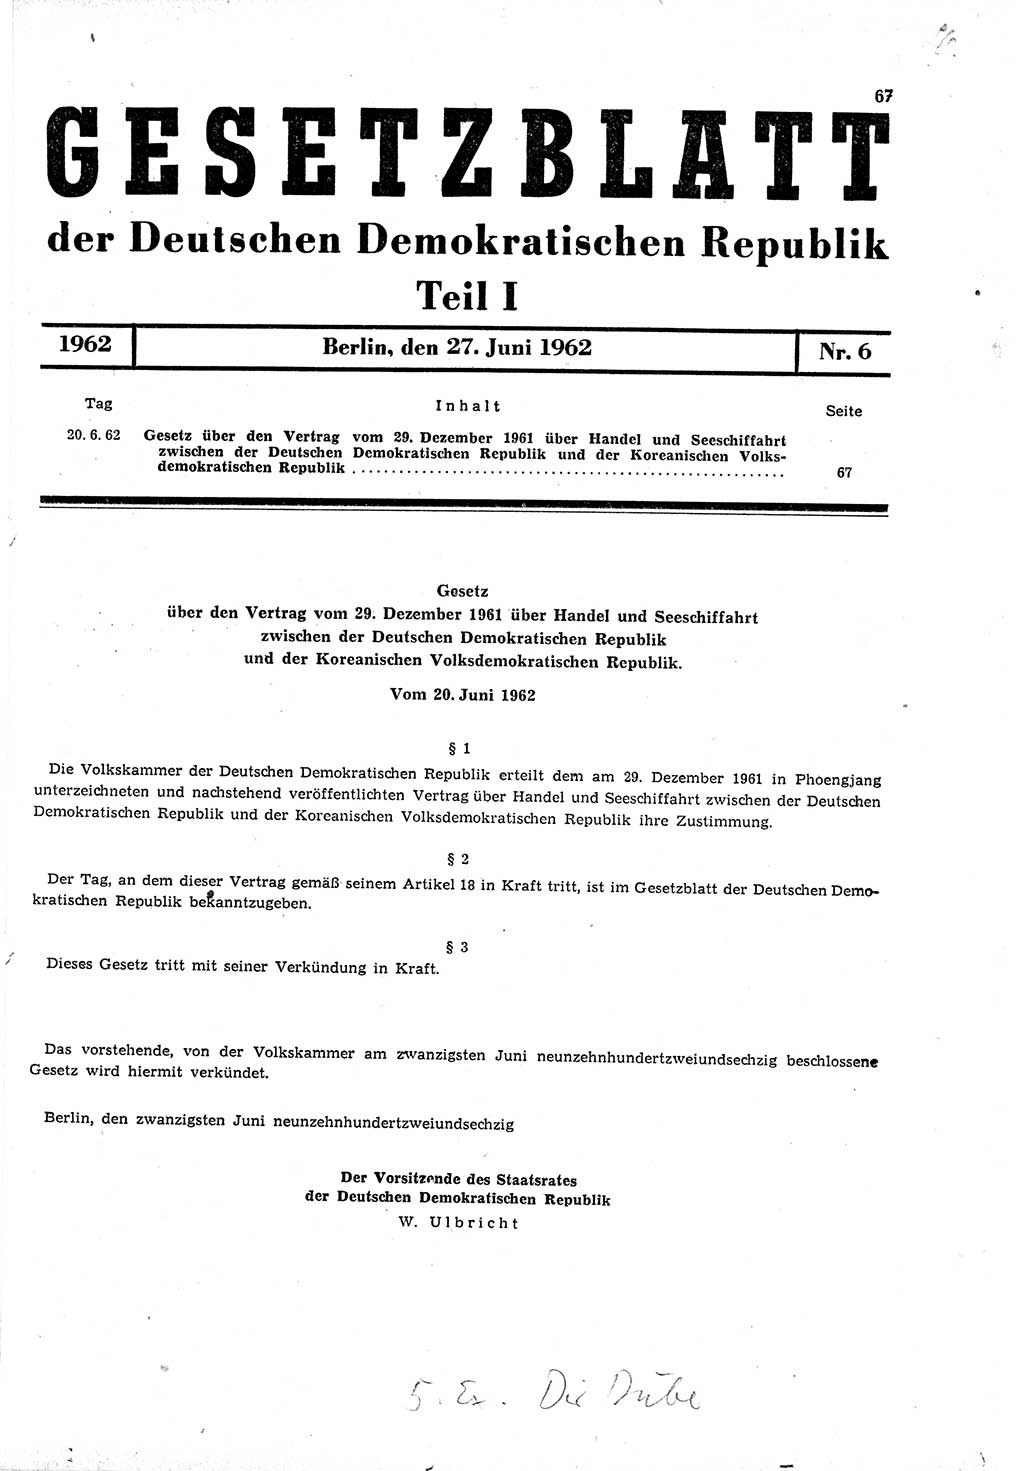 Gesetzblatt (GBl.) der Deutschen Demokratischen Republik (DDR) Teil Ⅰ 1962, Seite 67 (GBl. DDR Ⅰ 1962, S. 67)